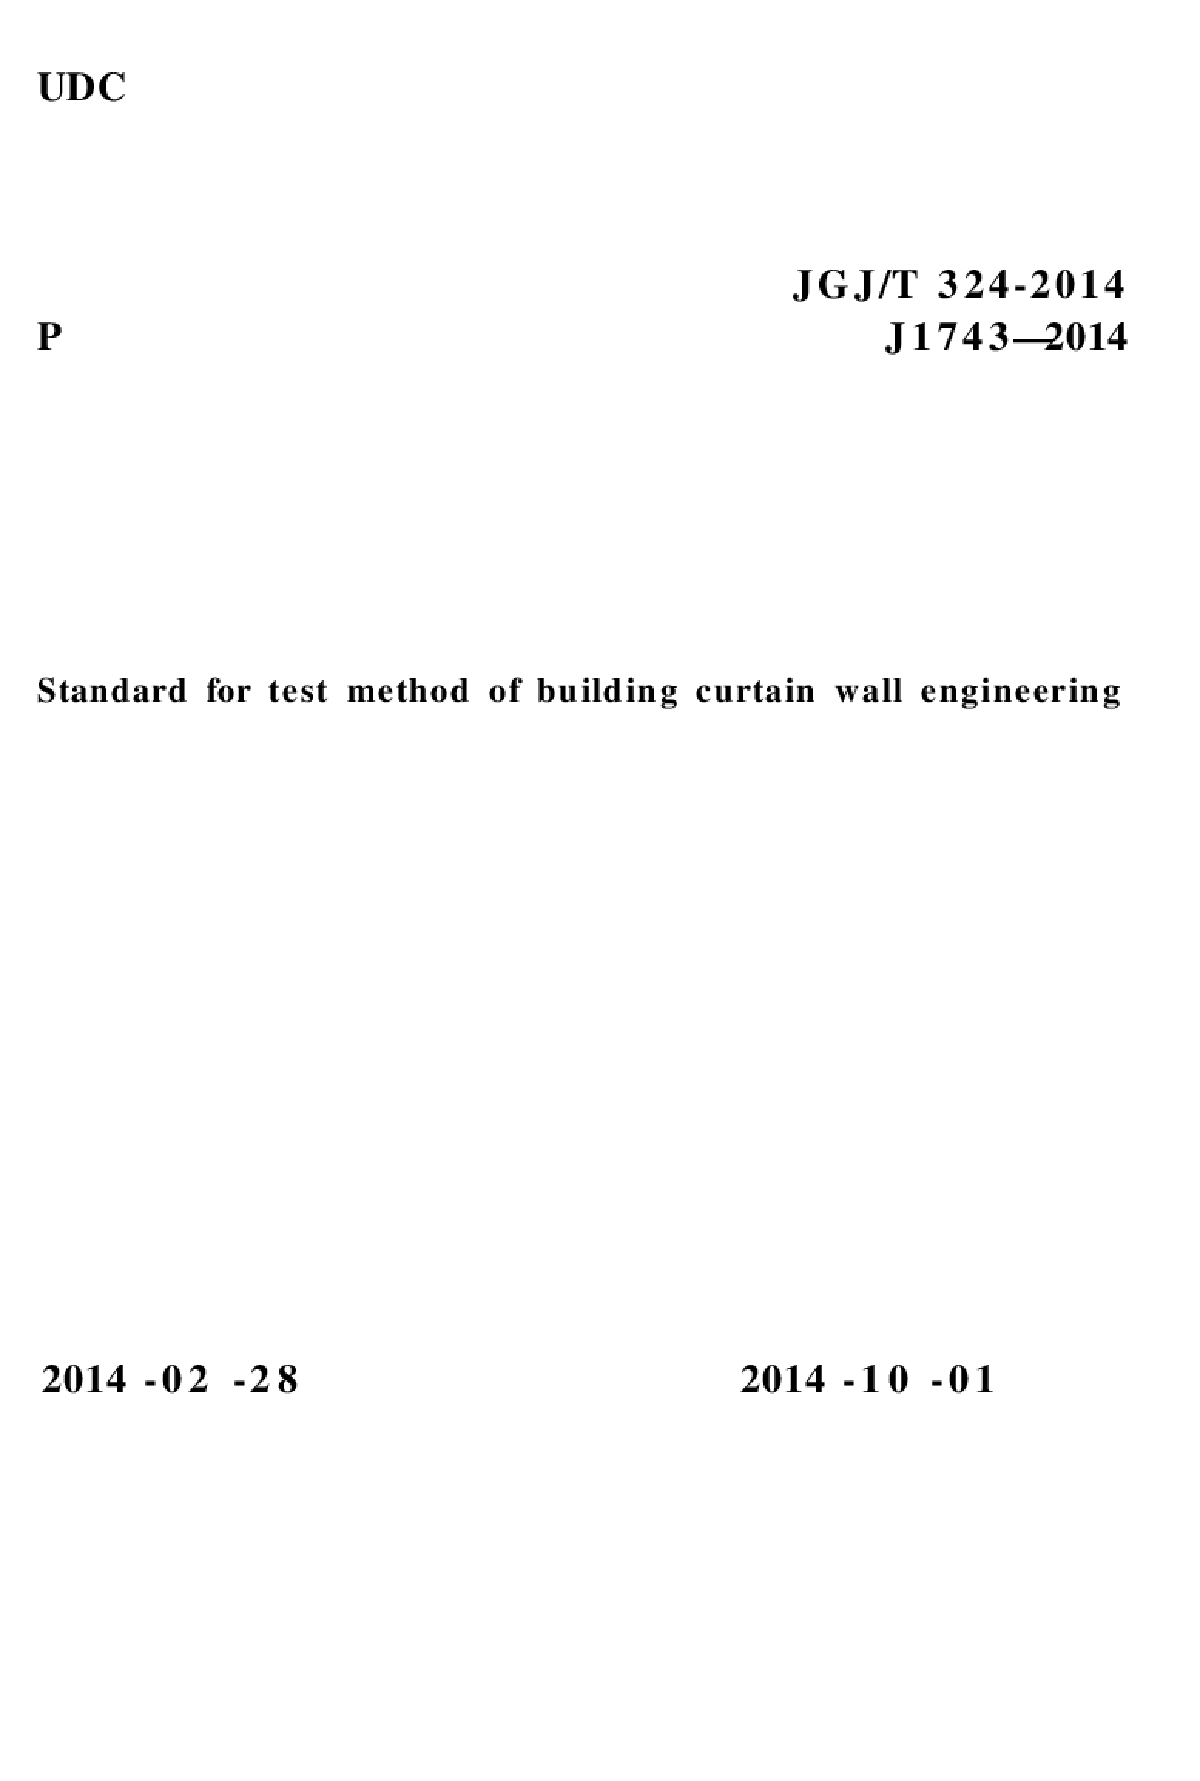 JGJT324-2014 建筑幕墙工程检测方法标准